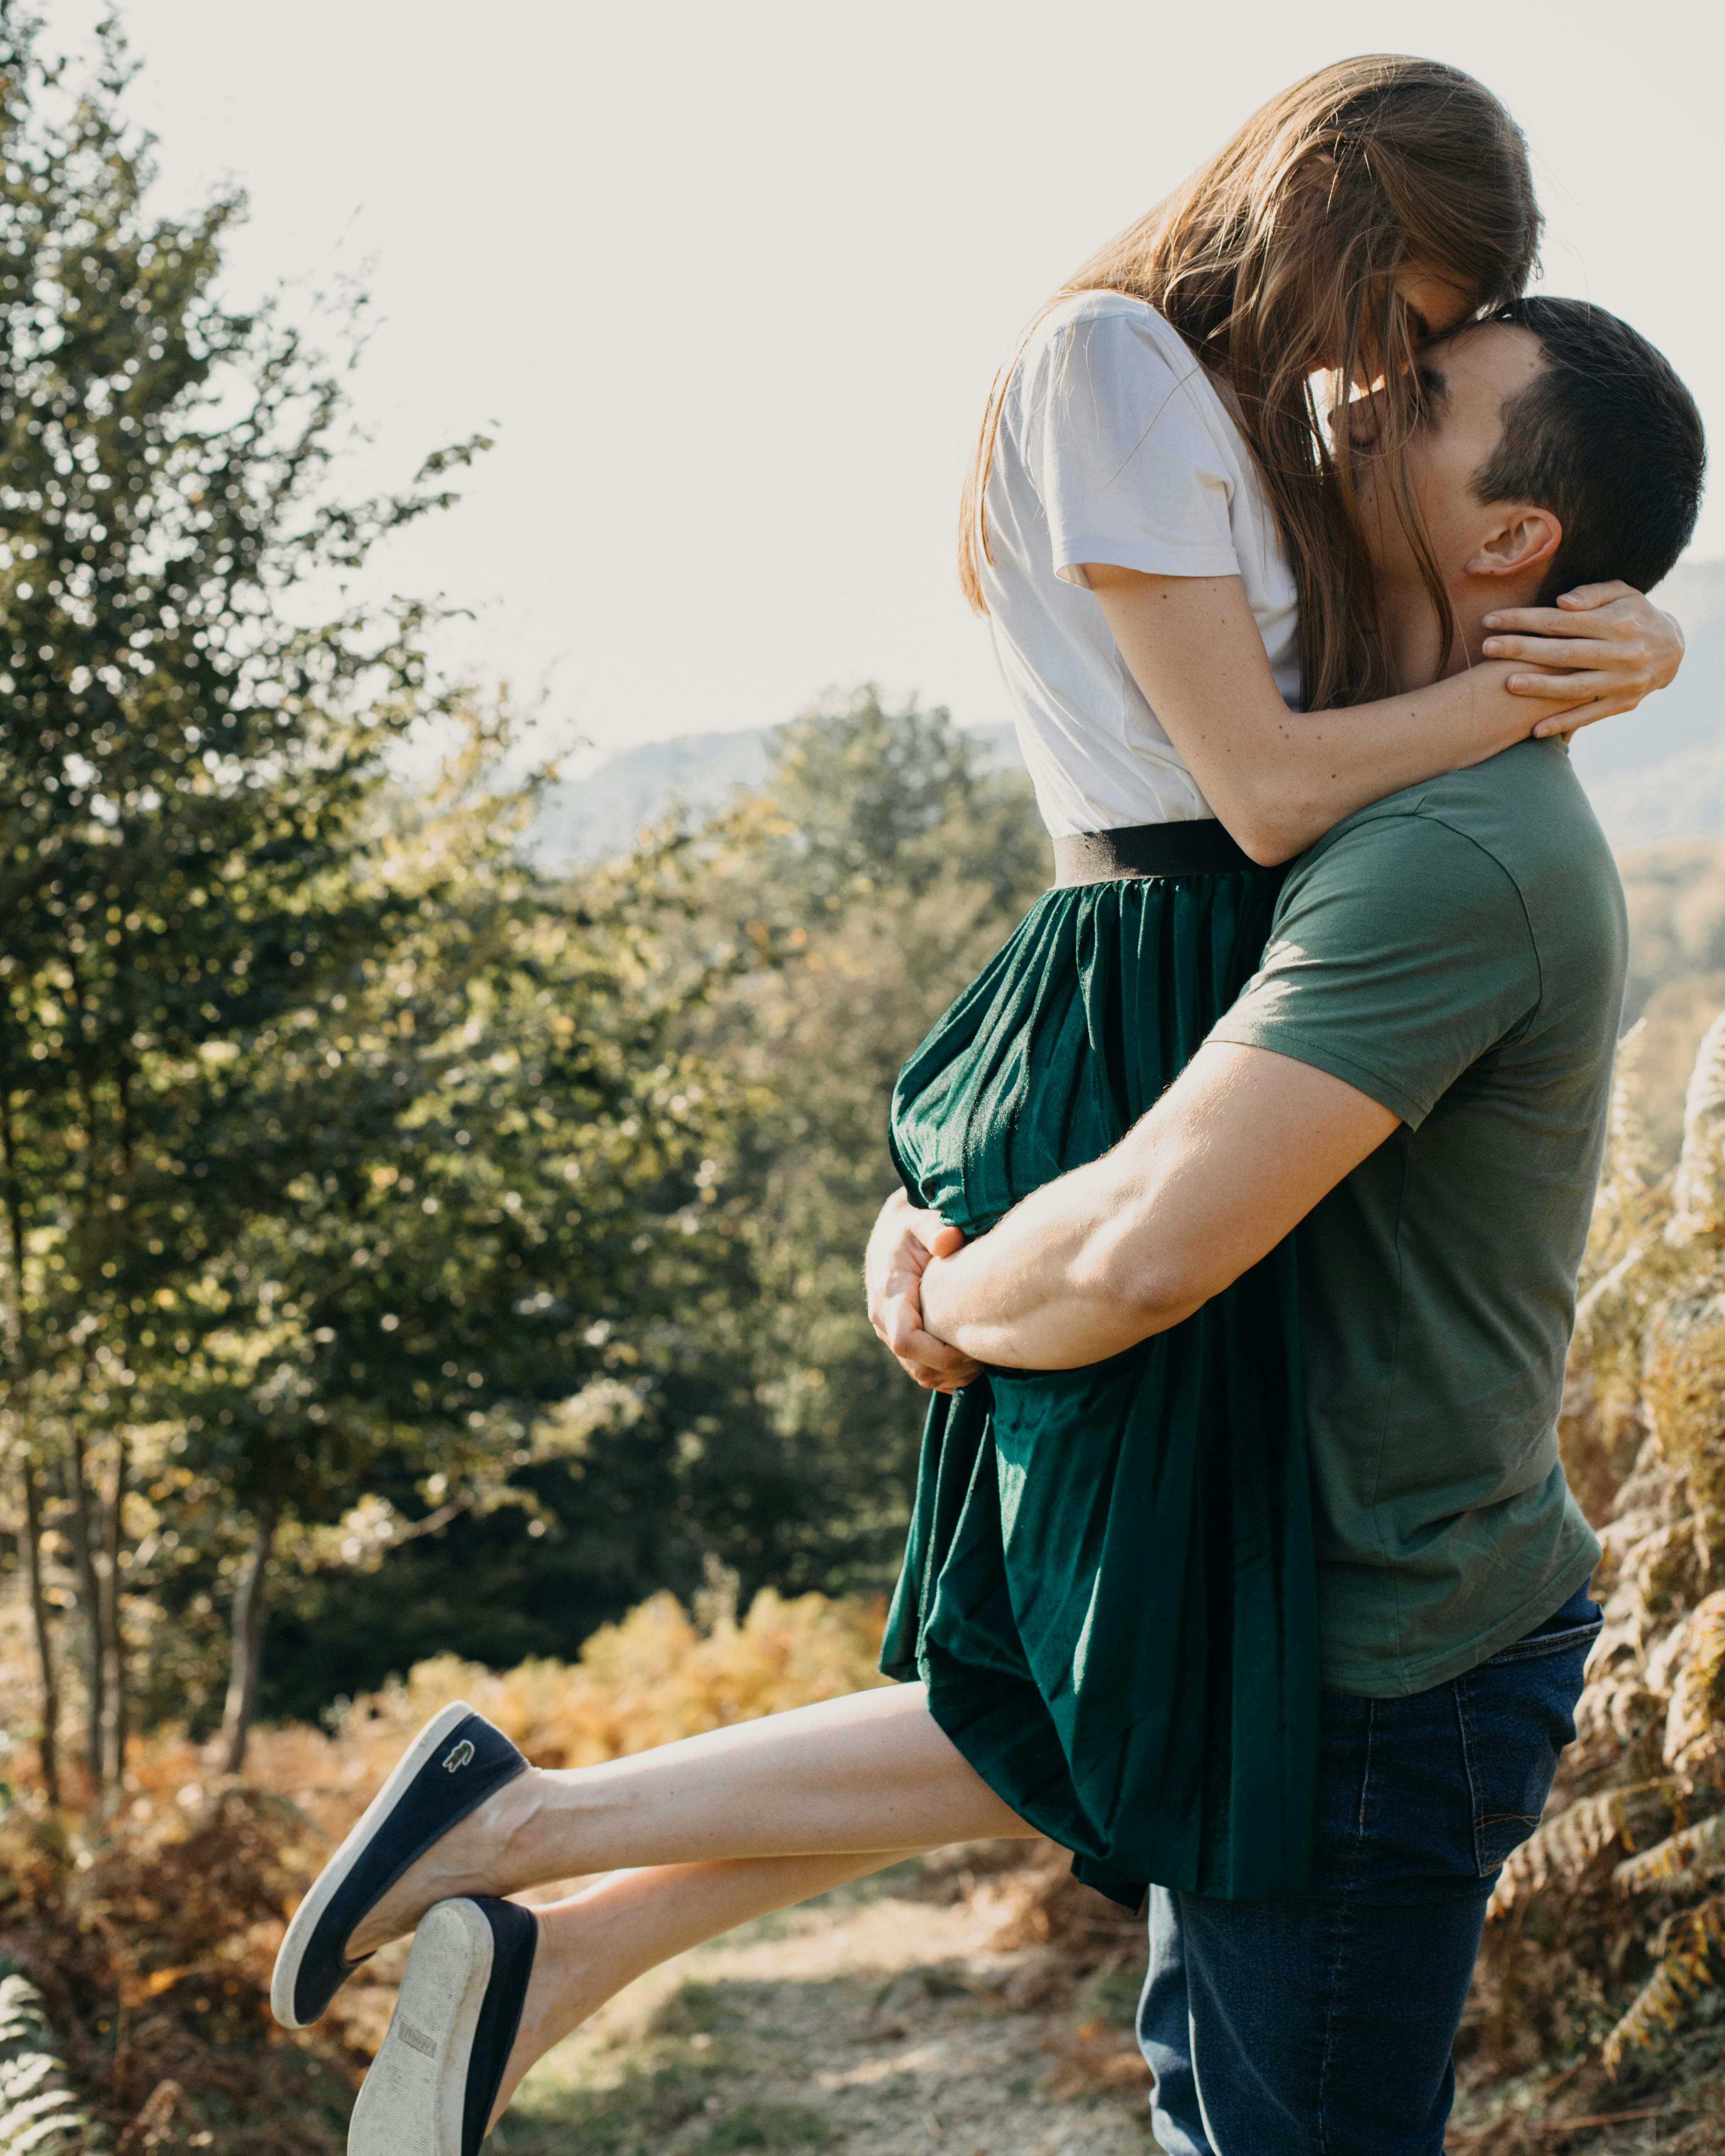 Un jeune couple heureux pose pour une photo | Source : Dmitriy Ganin sur Pexels